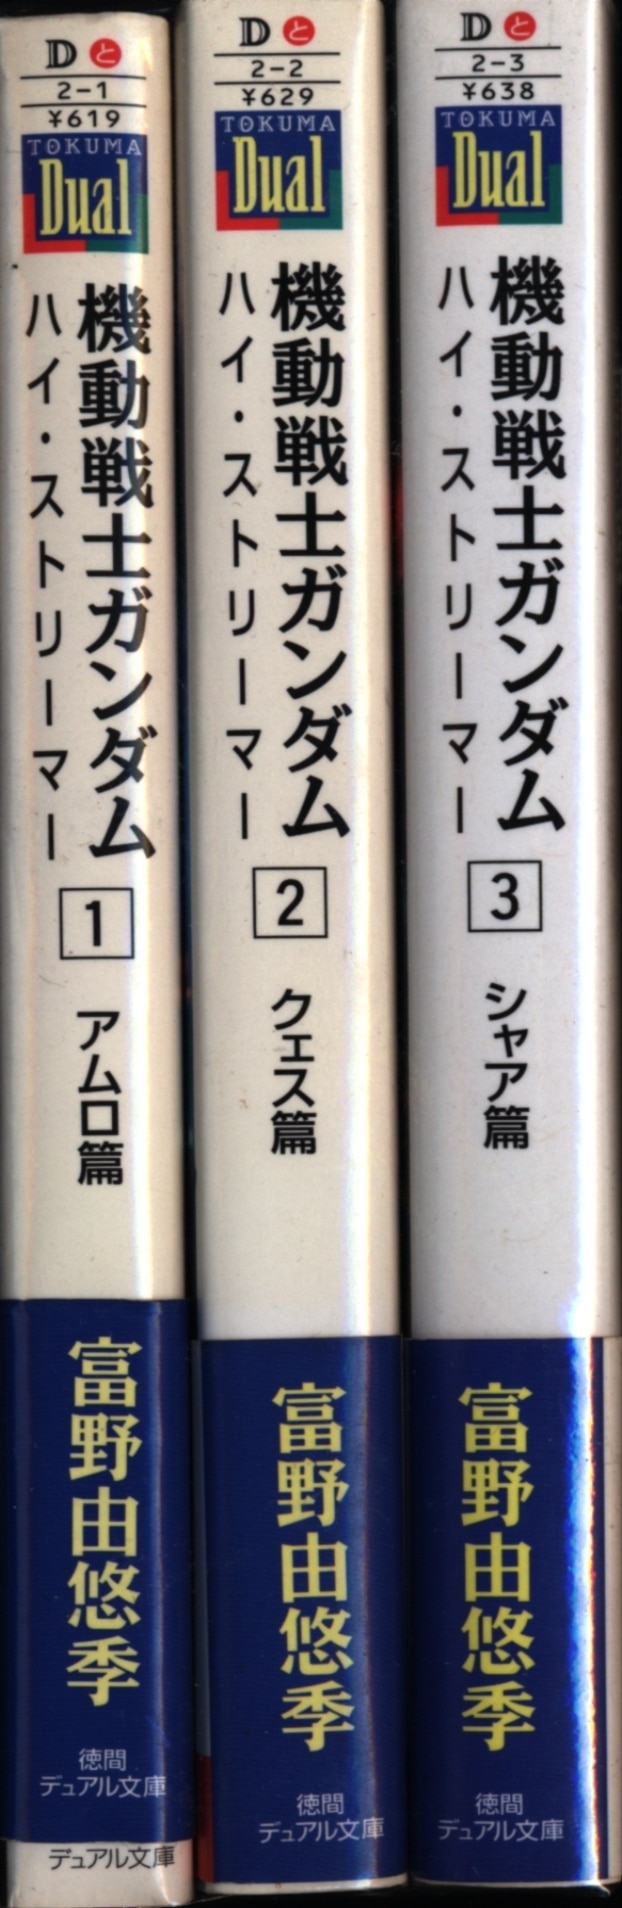 機動戦士ガンダム ハイ・ストリーマー 文庫 1-3巻セット (徳間デュアル 